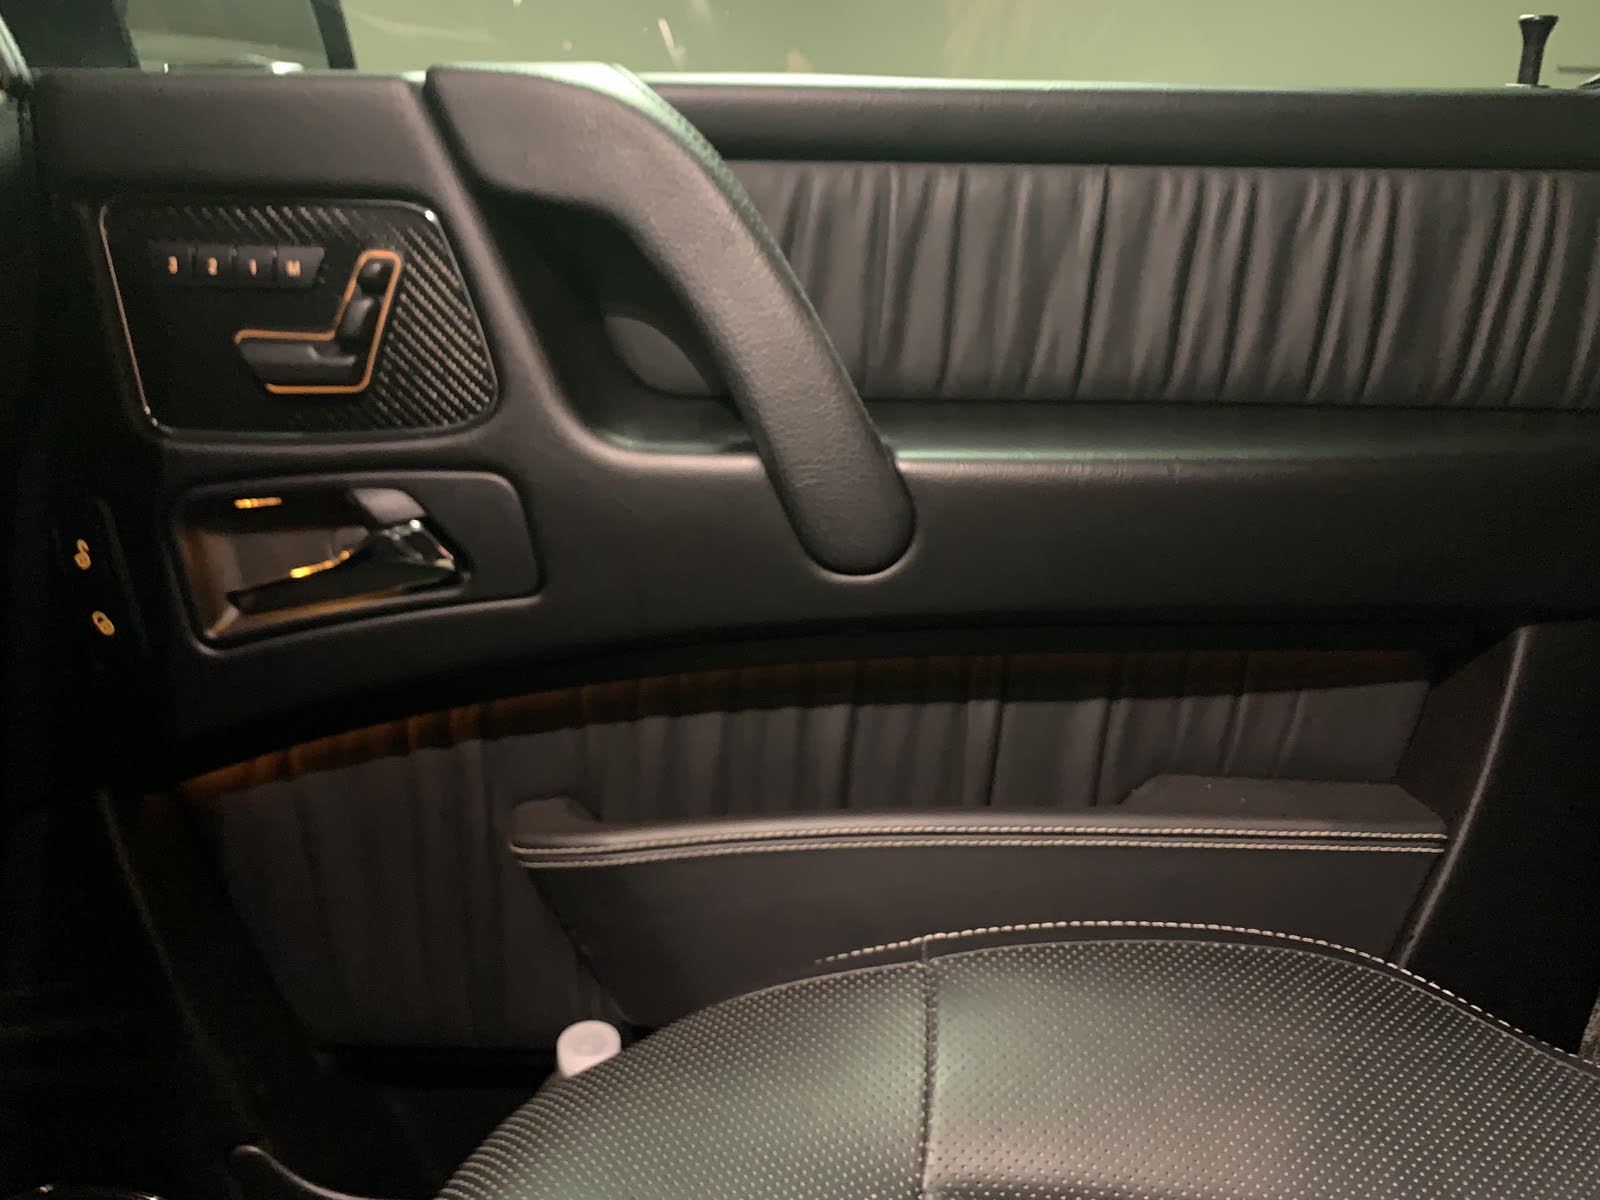 2016 Mercedes Benz G Class Interior Pictures Cargurus